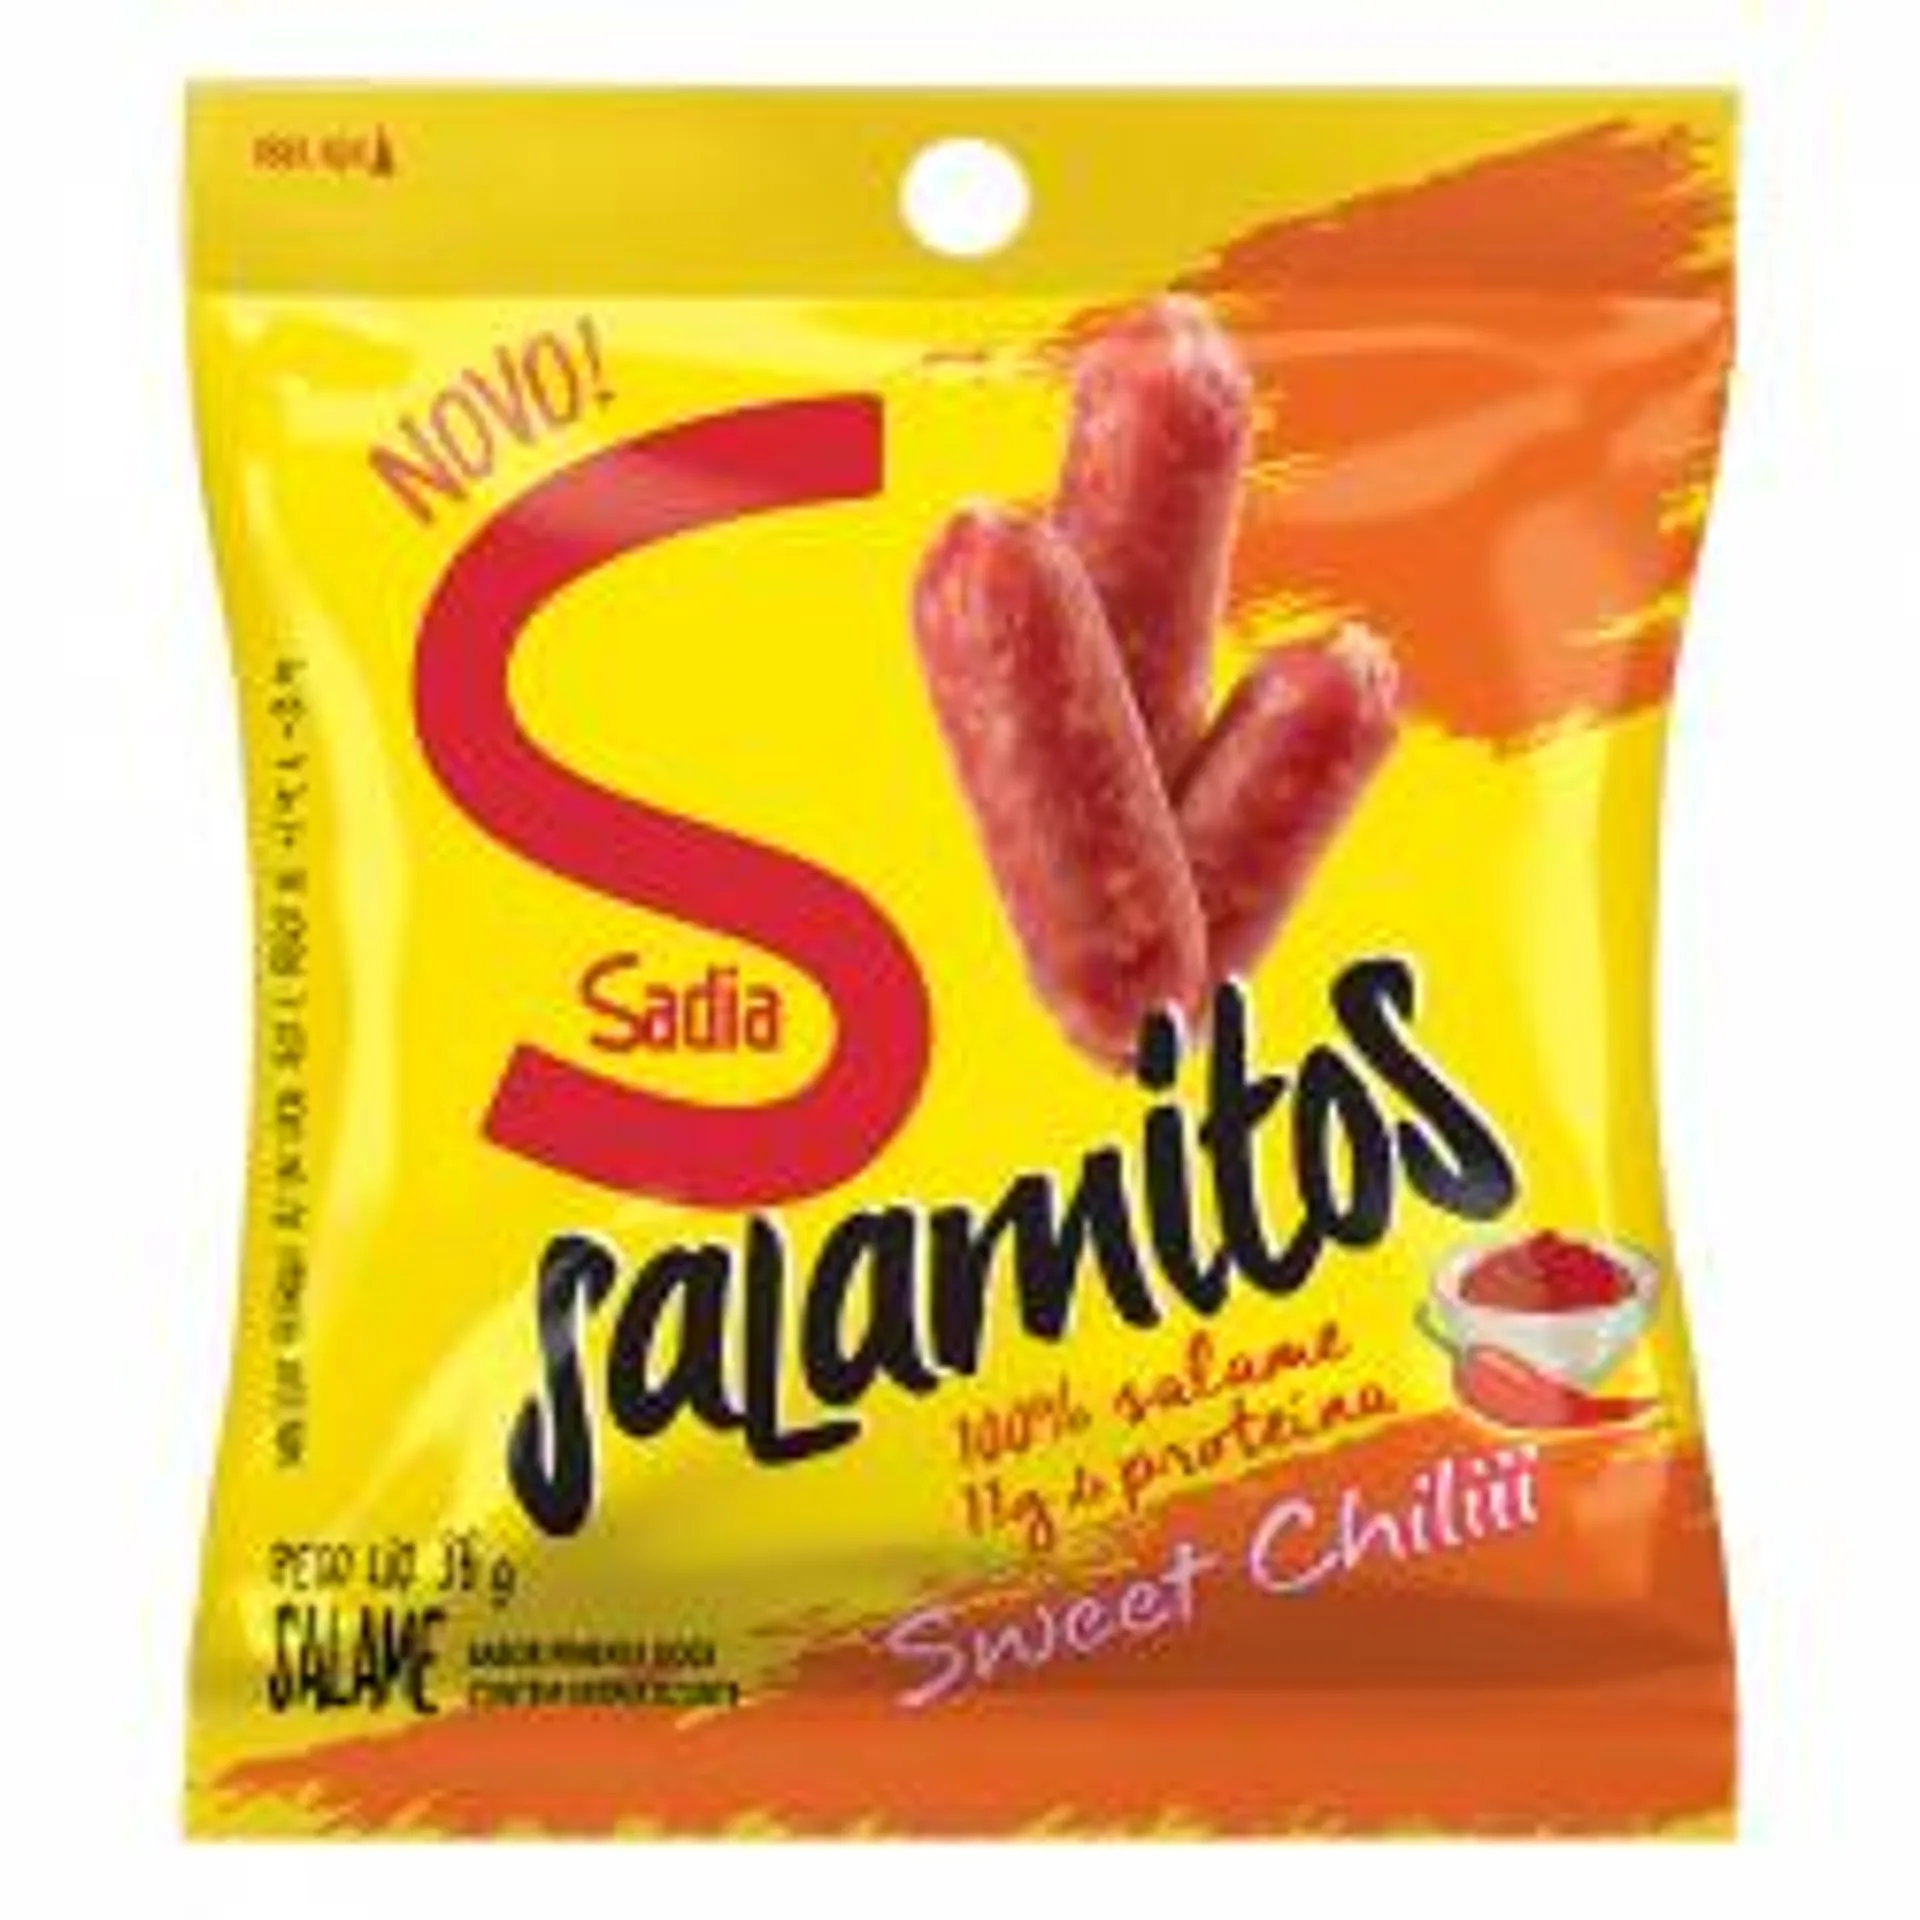 Salame Sweet Chilli Sadia Salamitos 36g